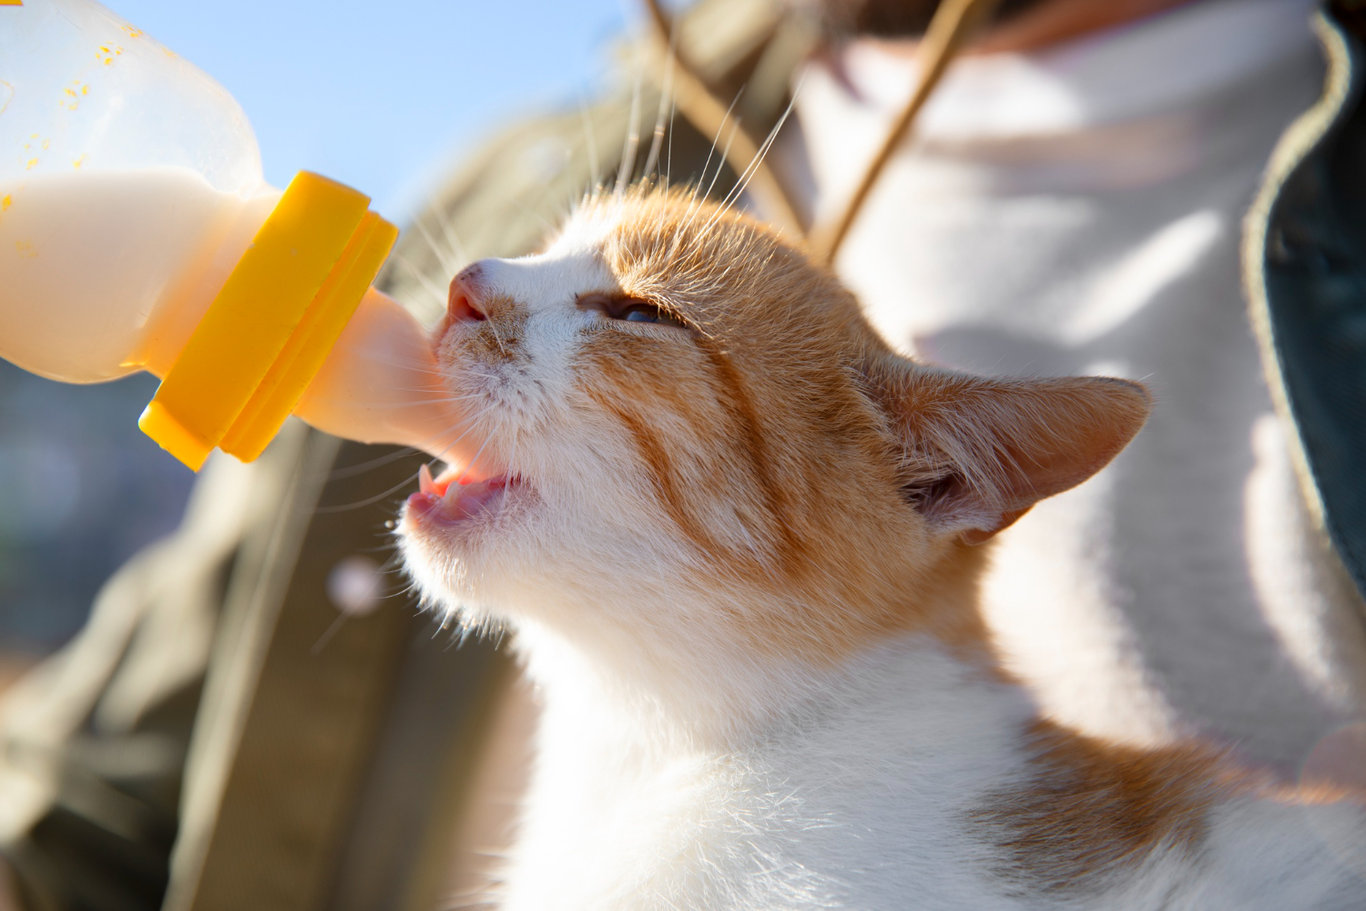 Kedileri sütle beslemek zararlı mı? Kedilere süt vermenin sağlık açısından zararları var mı?